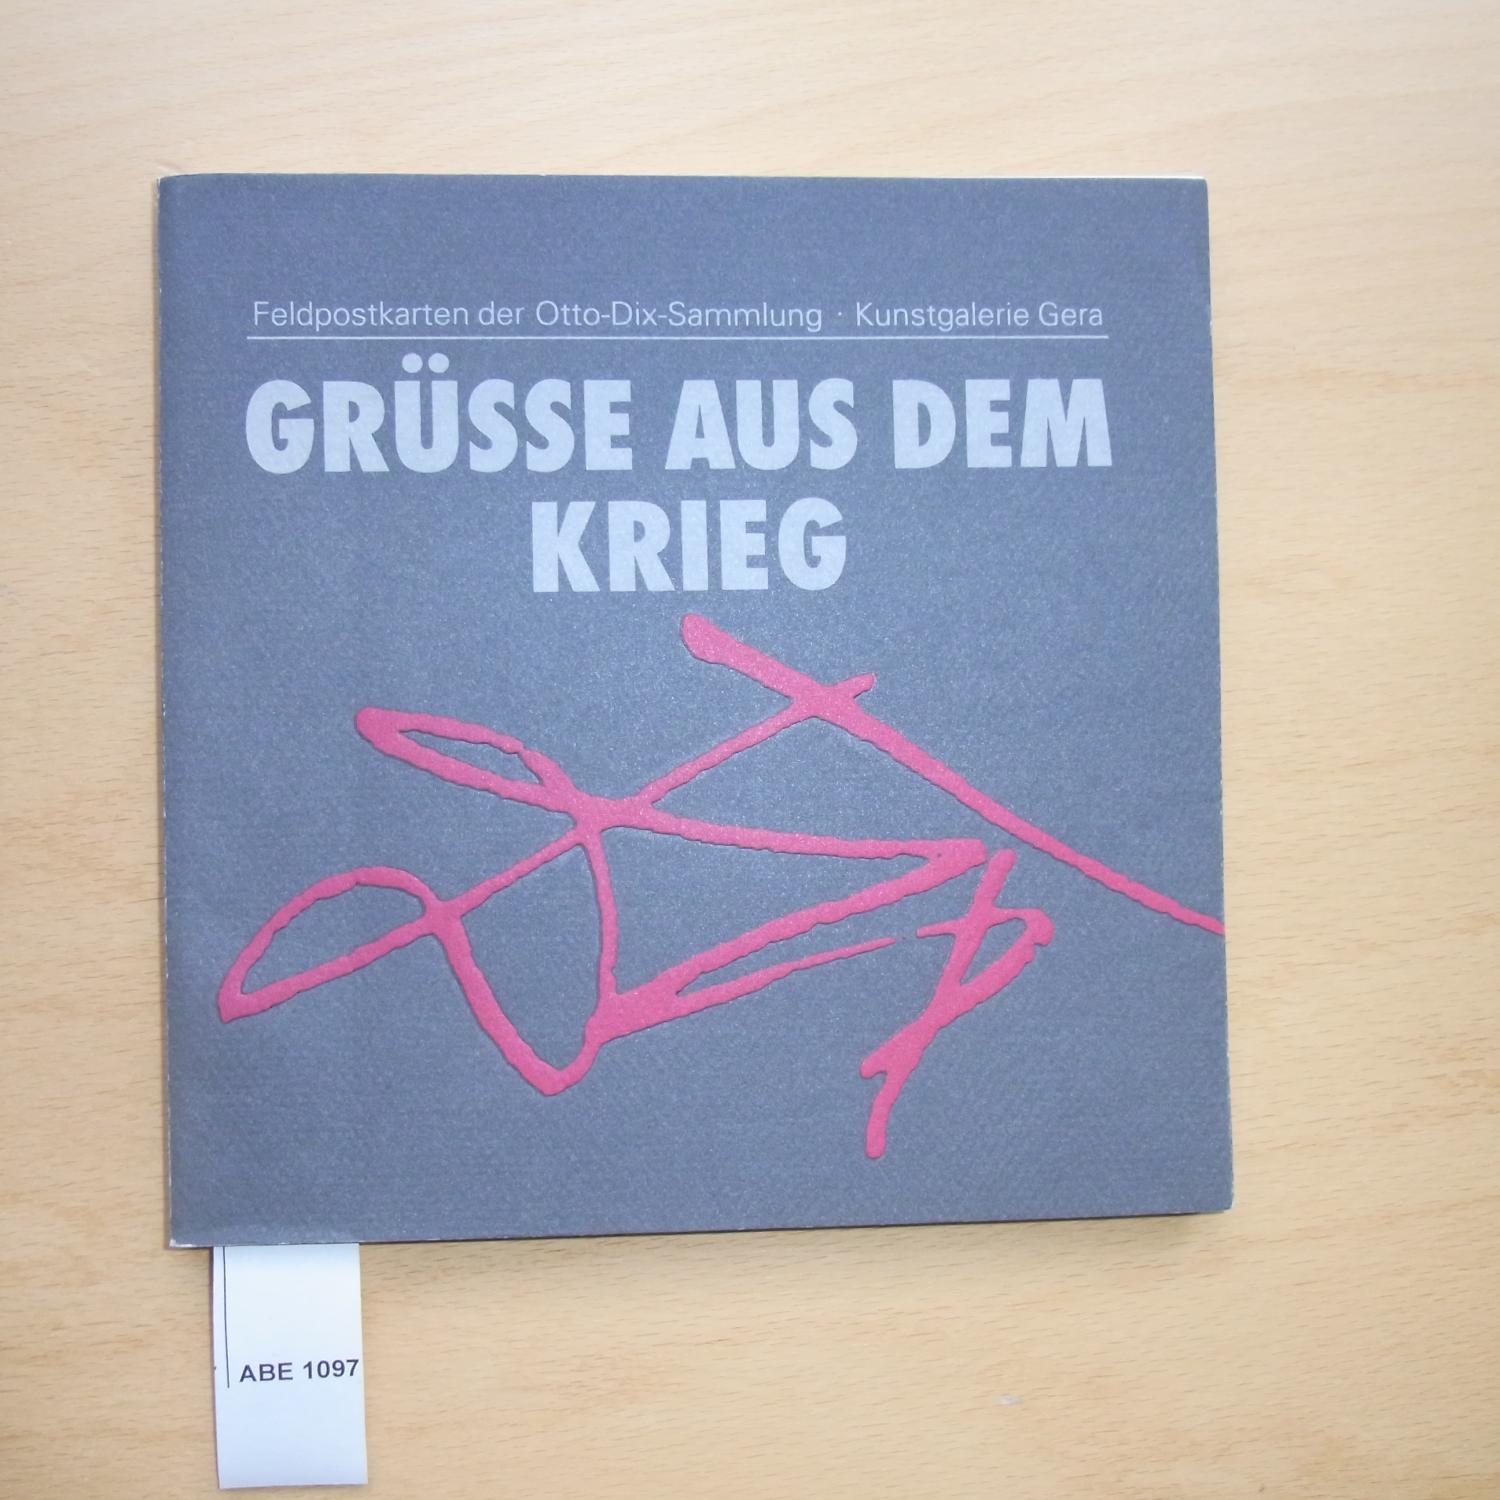 grusse_aus_dem_krieg-die_feldpostkarten_der_otto-dix-sammlung_in_der